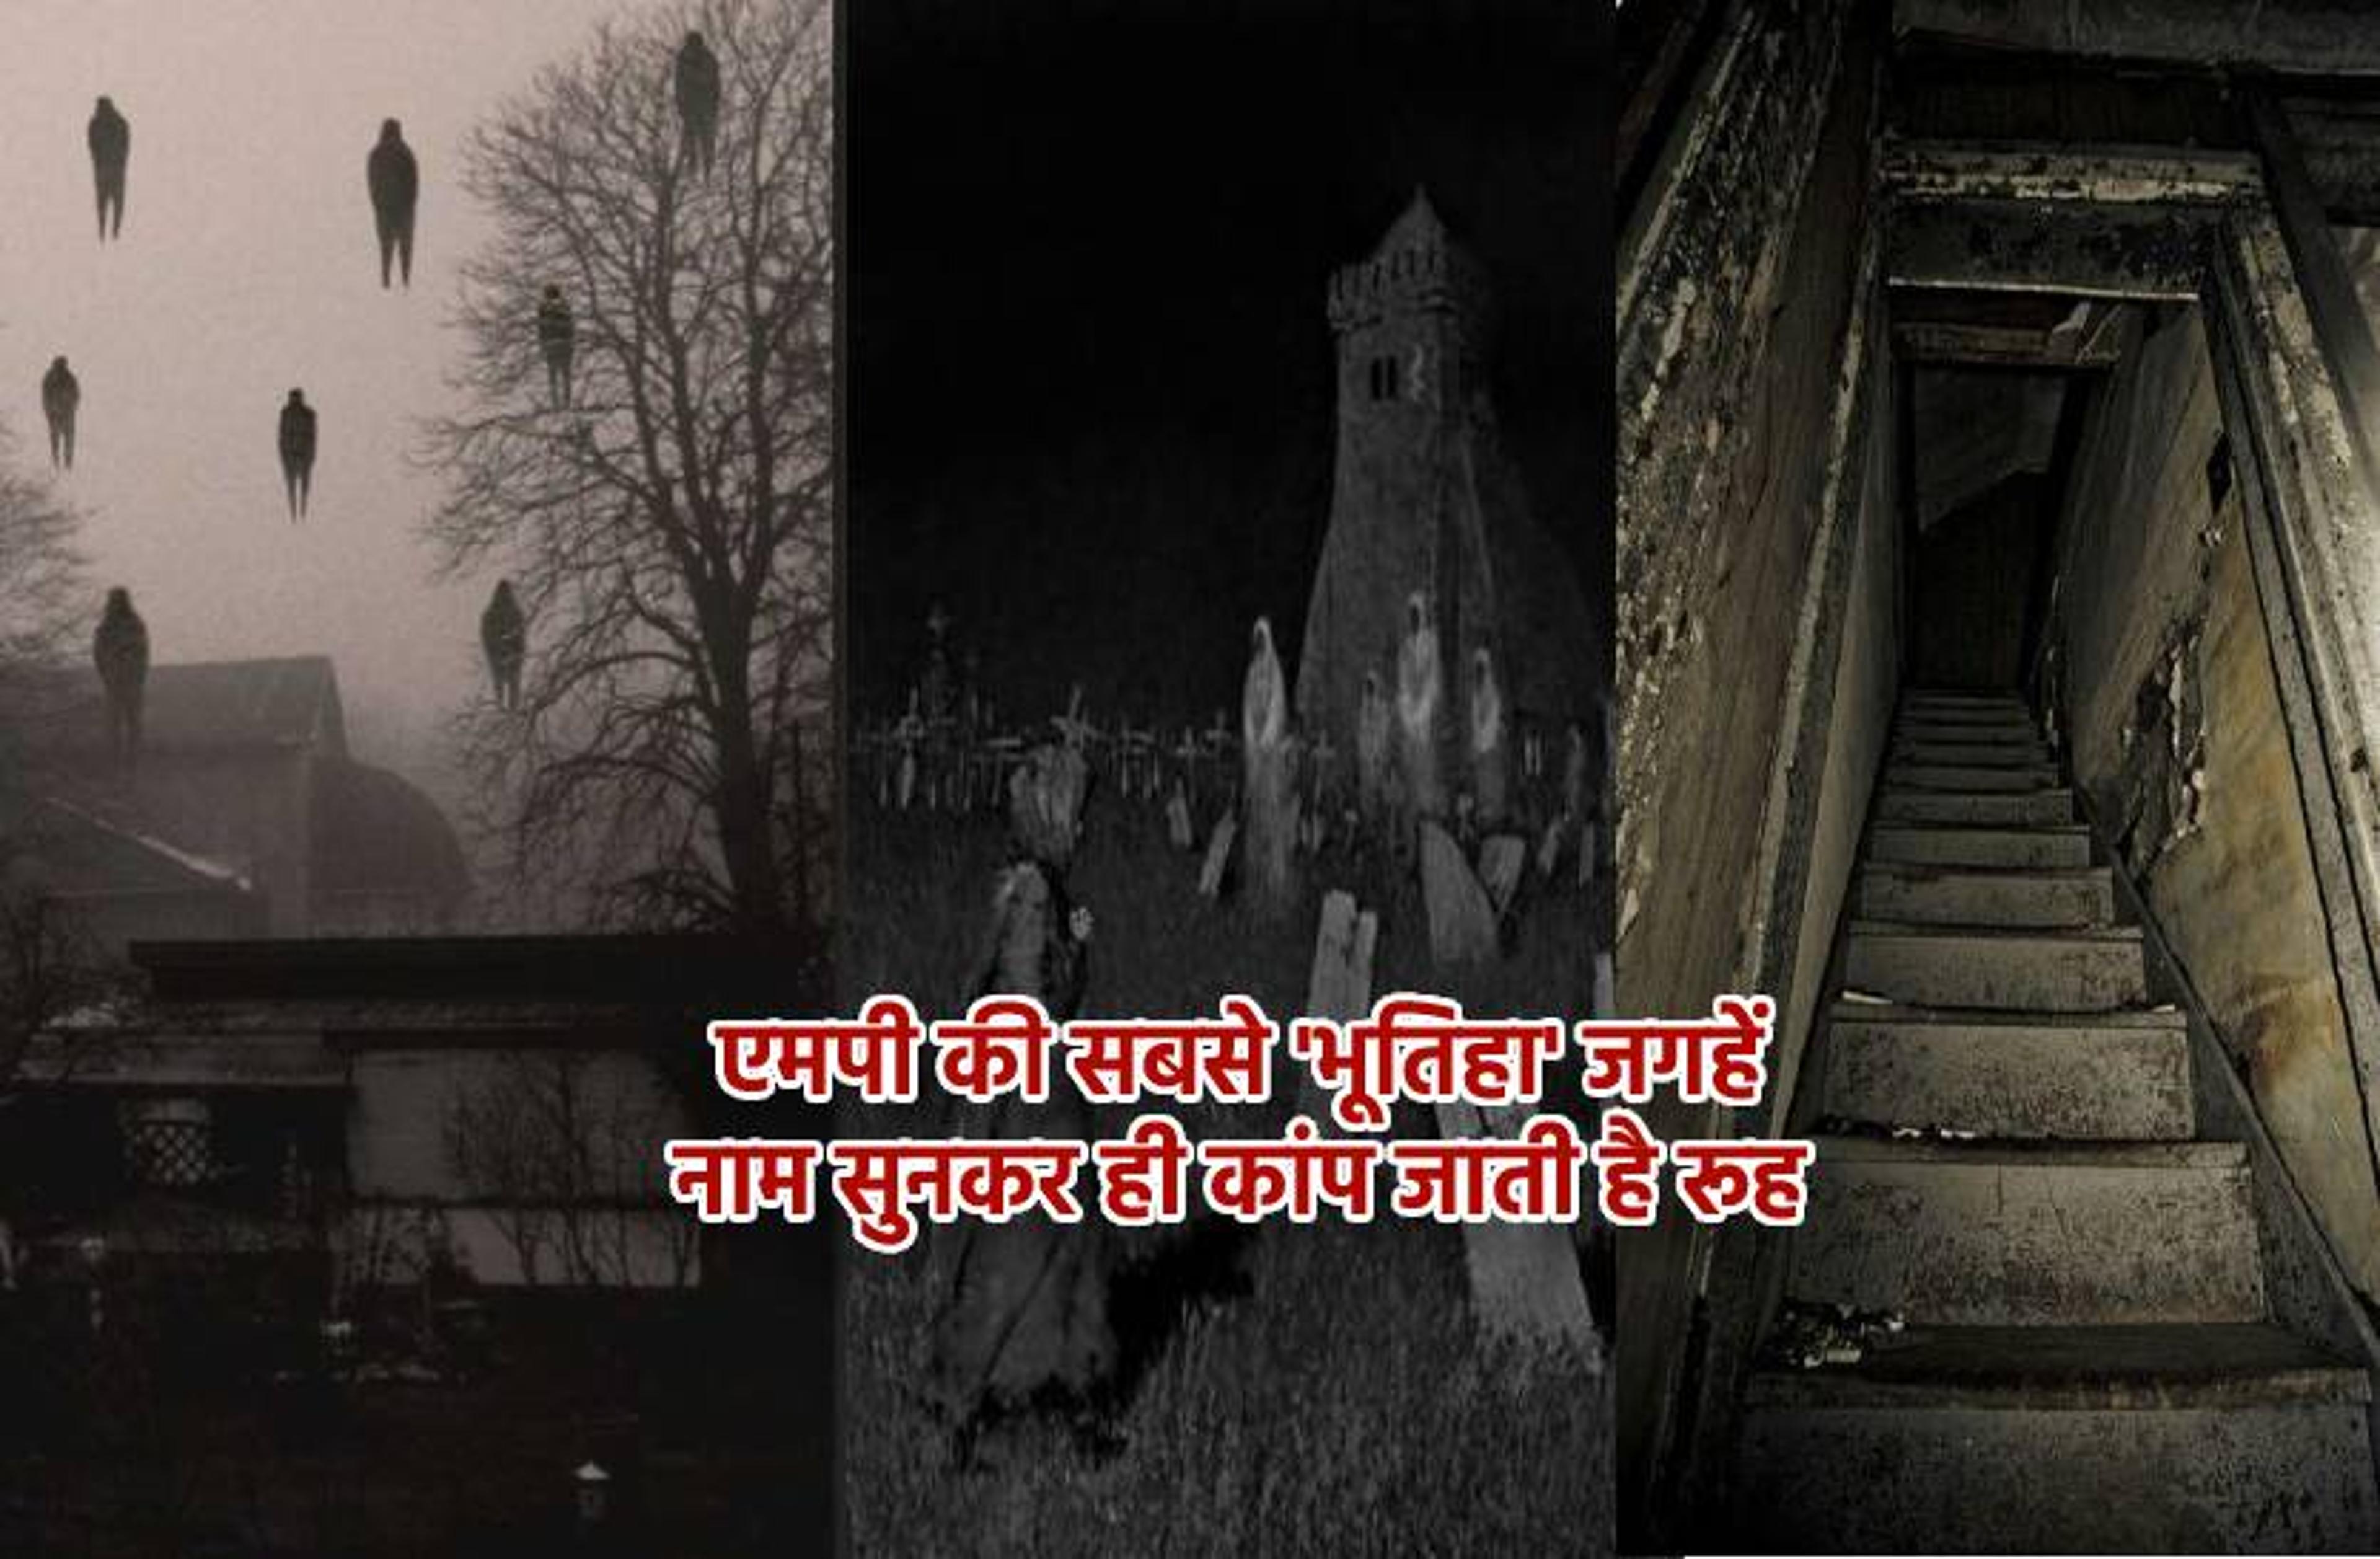 Top Most Haunted Places in MP : एमपी की सबसे डरावनी जगहें, कहीं रात में रोते हैं मासूम, तो कहीं आज भी जमती है भूतों की महफिल